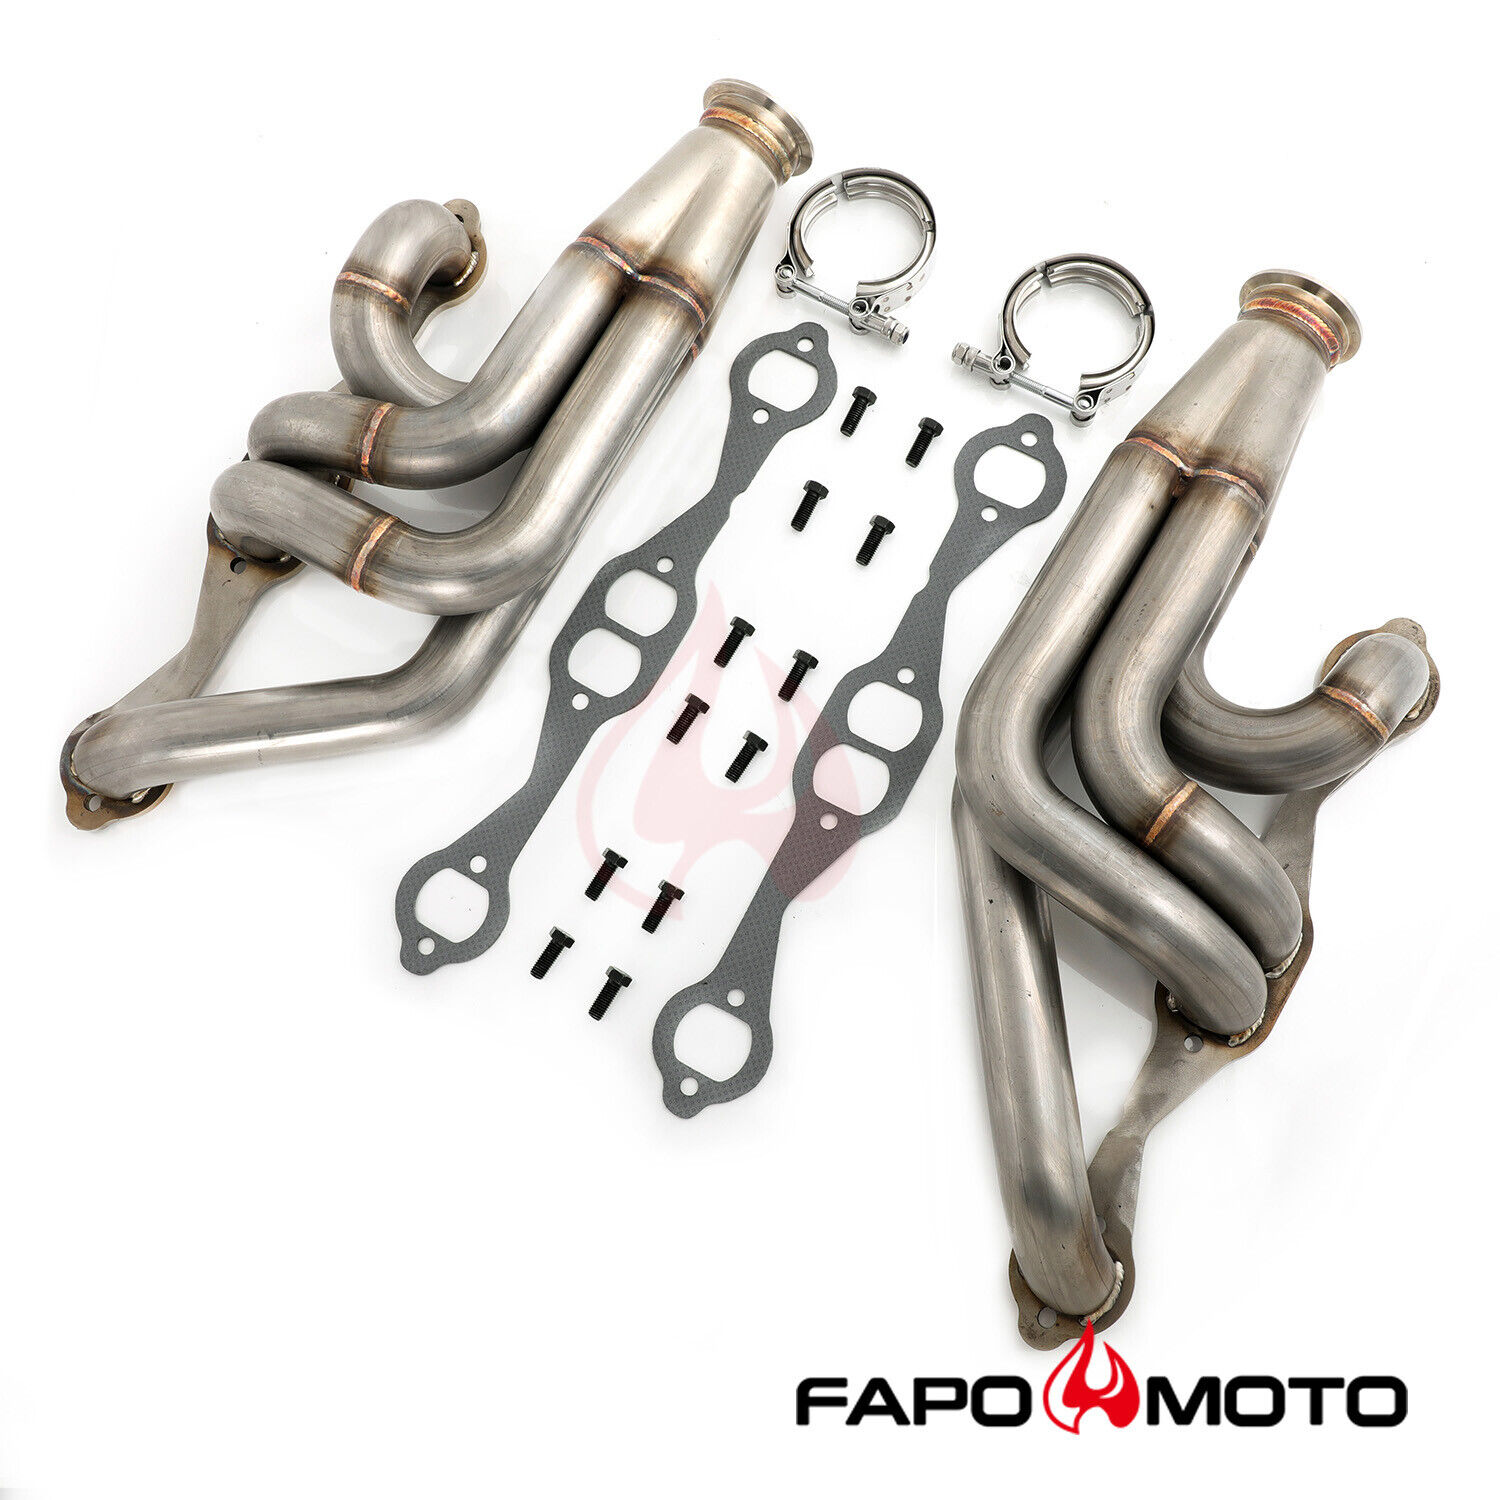 FAPO Turbo Headers for Chevy Chevelle Malibu El Camino A-body Small Block SBC V8